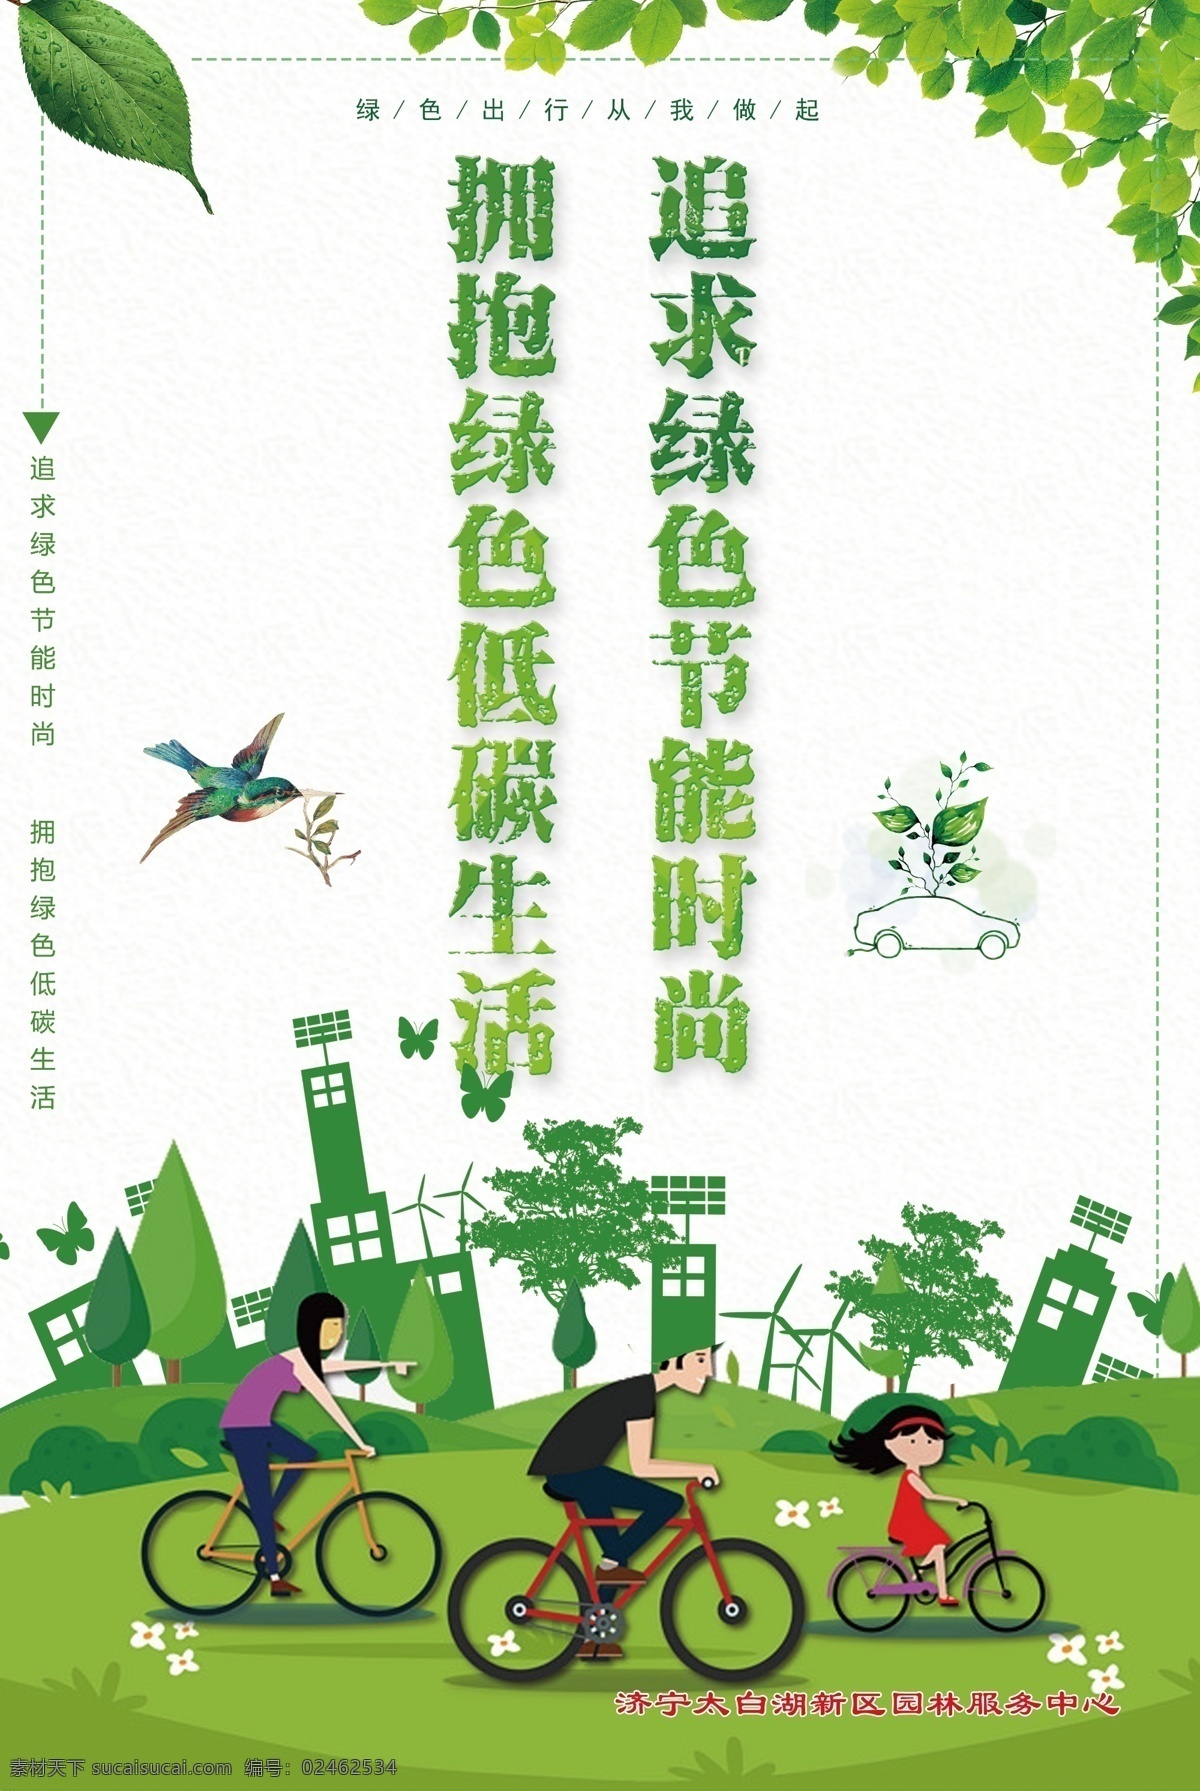 绿色环保海报 绿色 山东 济宁 城市 绿化 内容 logo 树叶 绿草 草地 森林 环保 自行车 分层